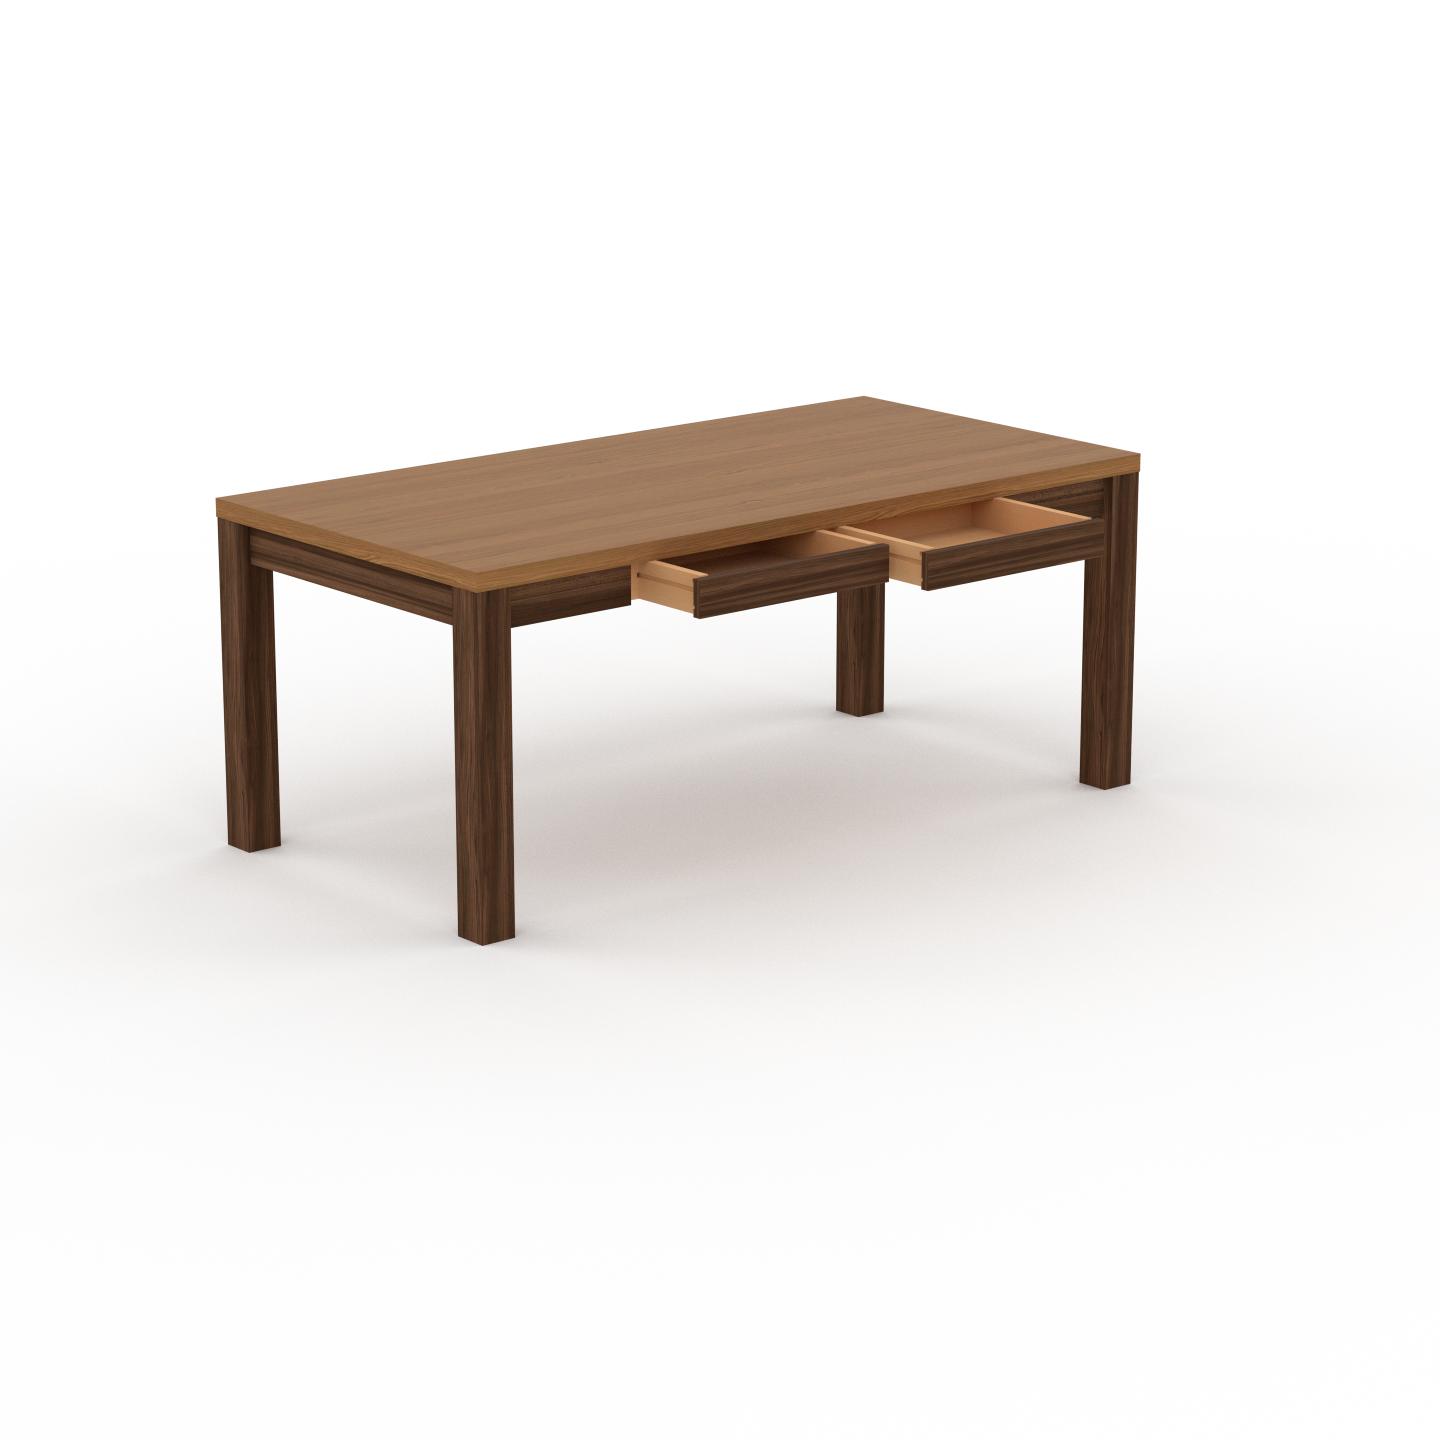 MYCS Holztisch Massivholz Eiche - Eleganter Massivholztisch: mit 2 Schublade/n & Tischrahmen - Hochwertige Materialien - 180 x 76 x 90 cm, konfigurierbar